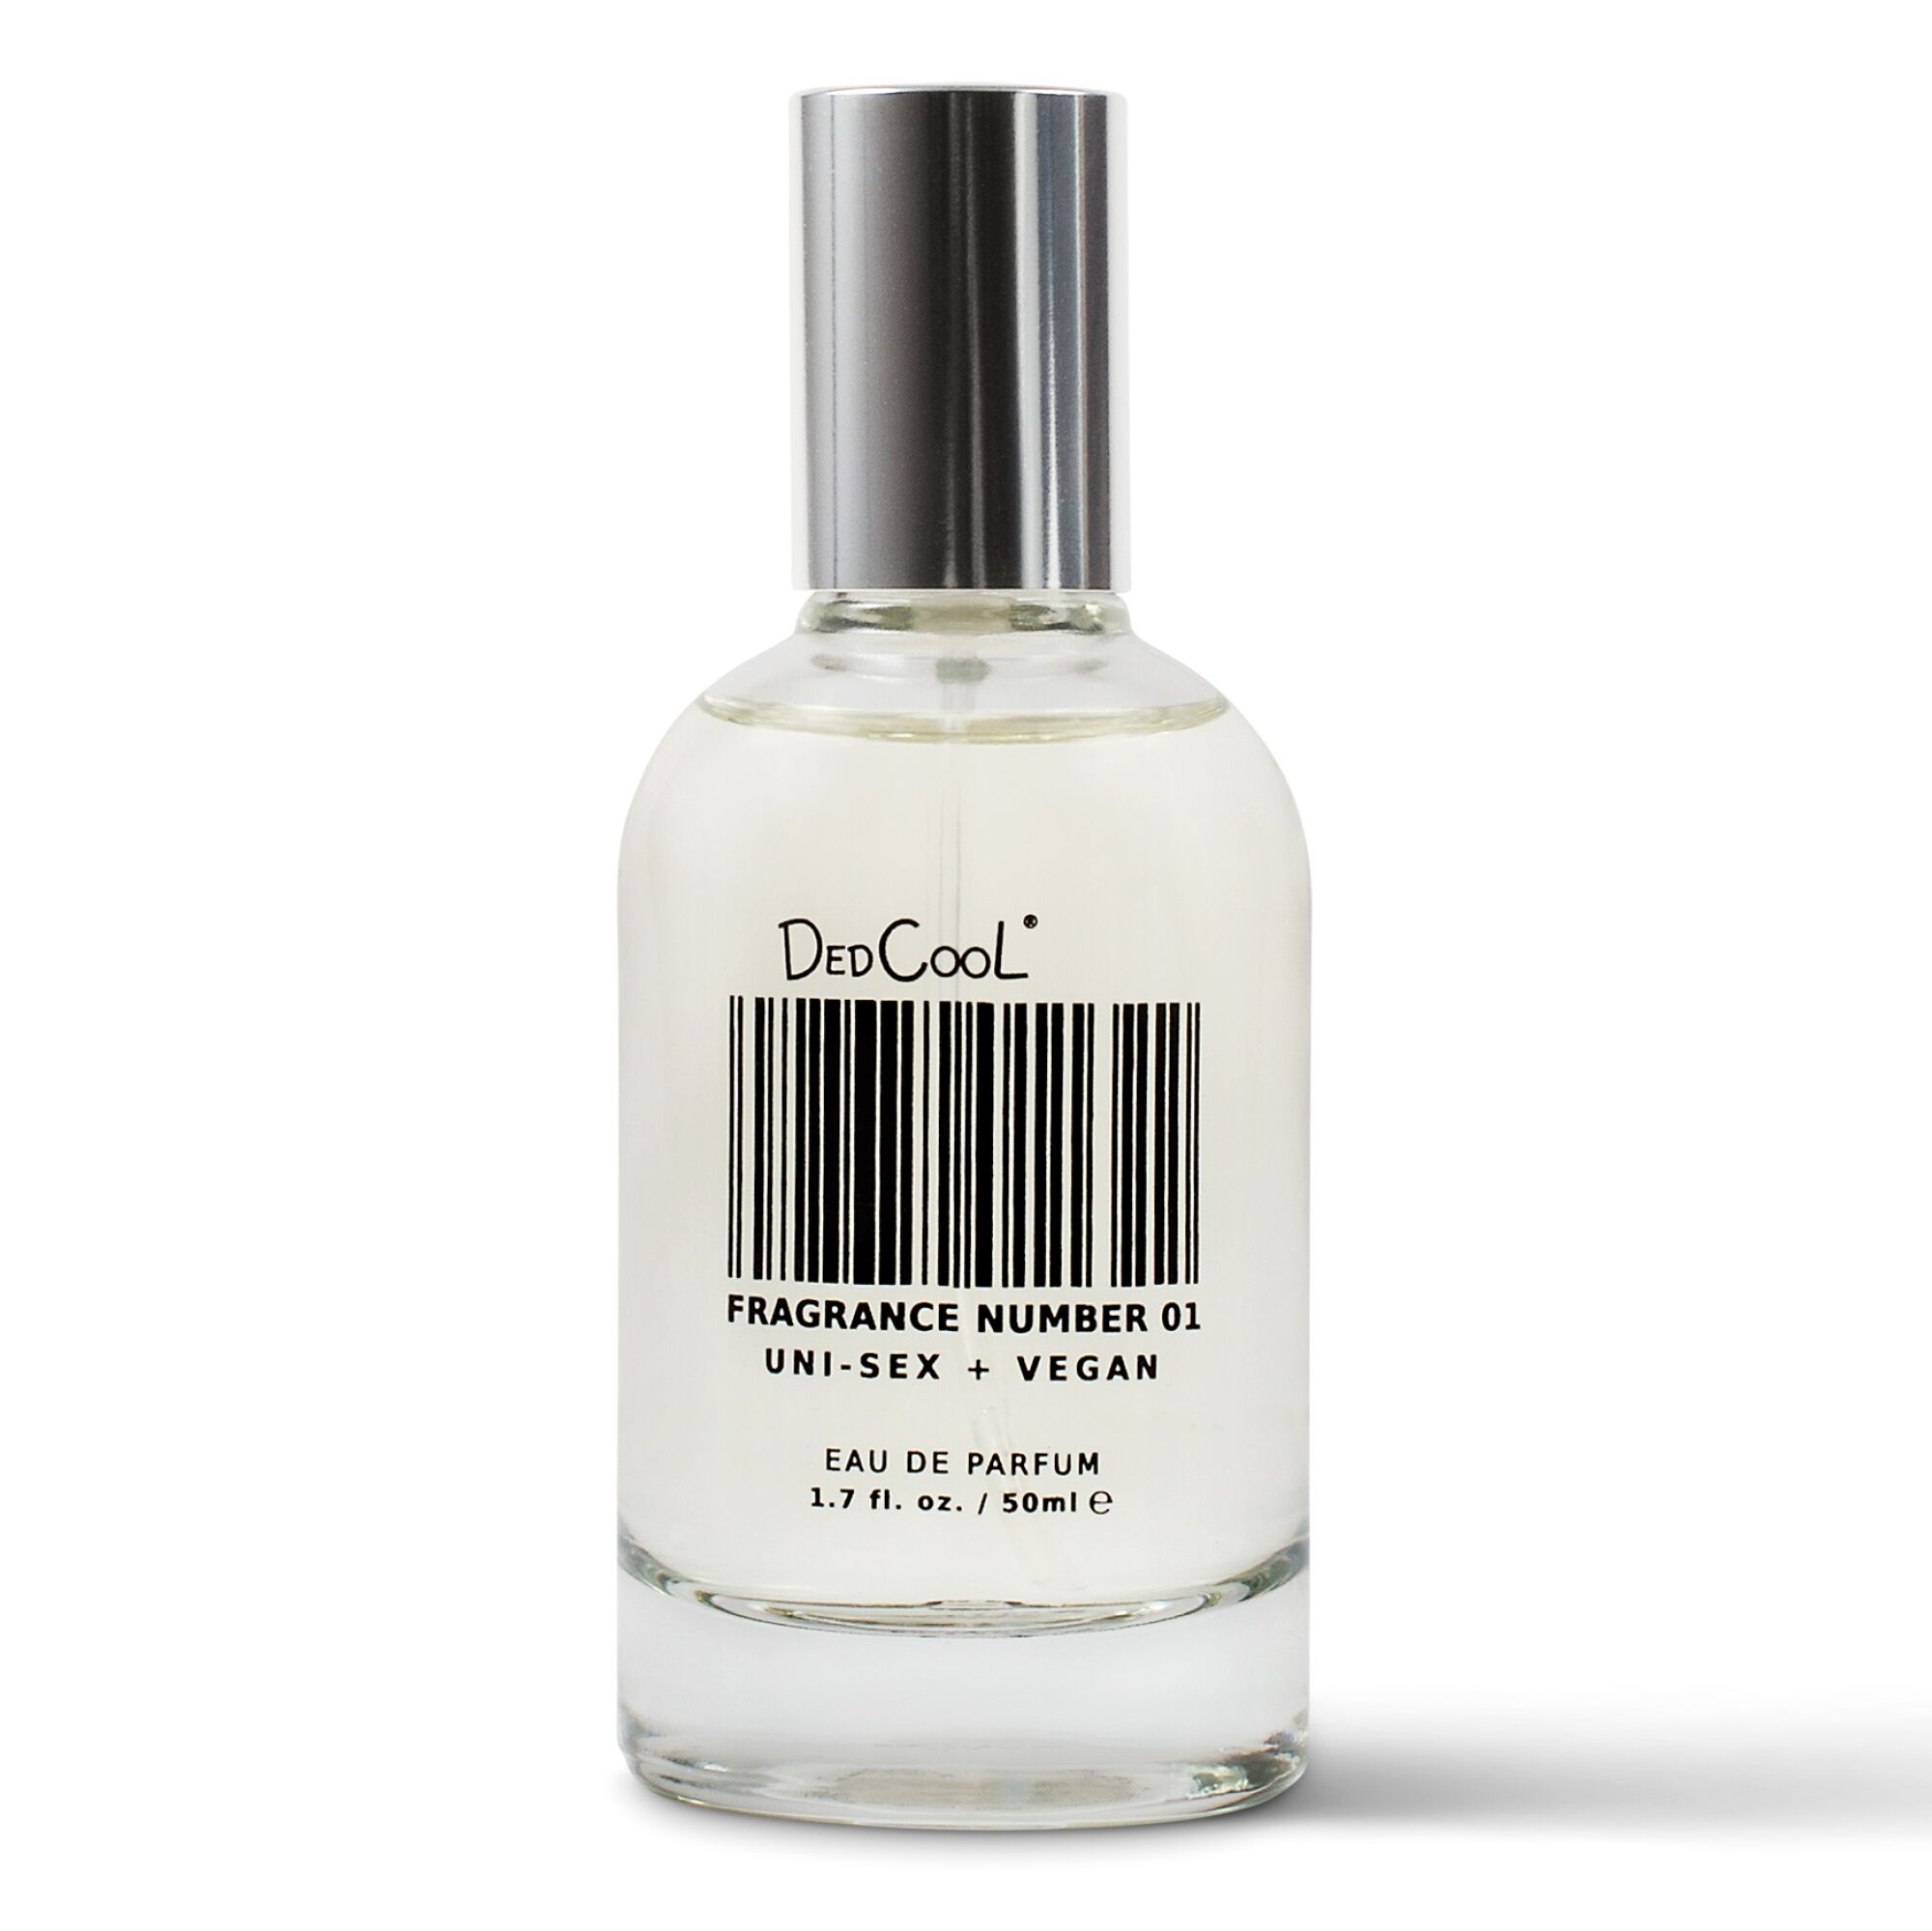 A clear bottle of DedCool fragrance.